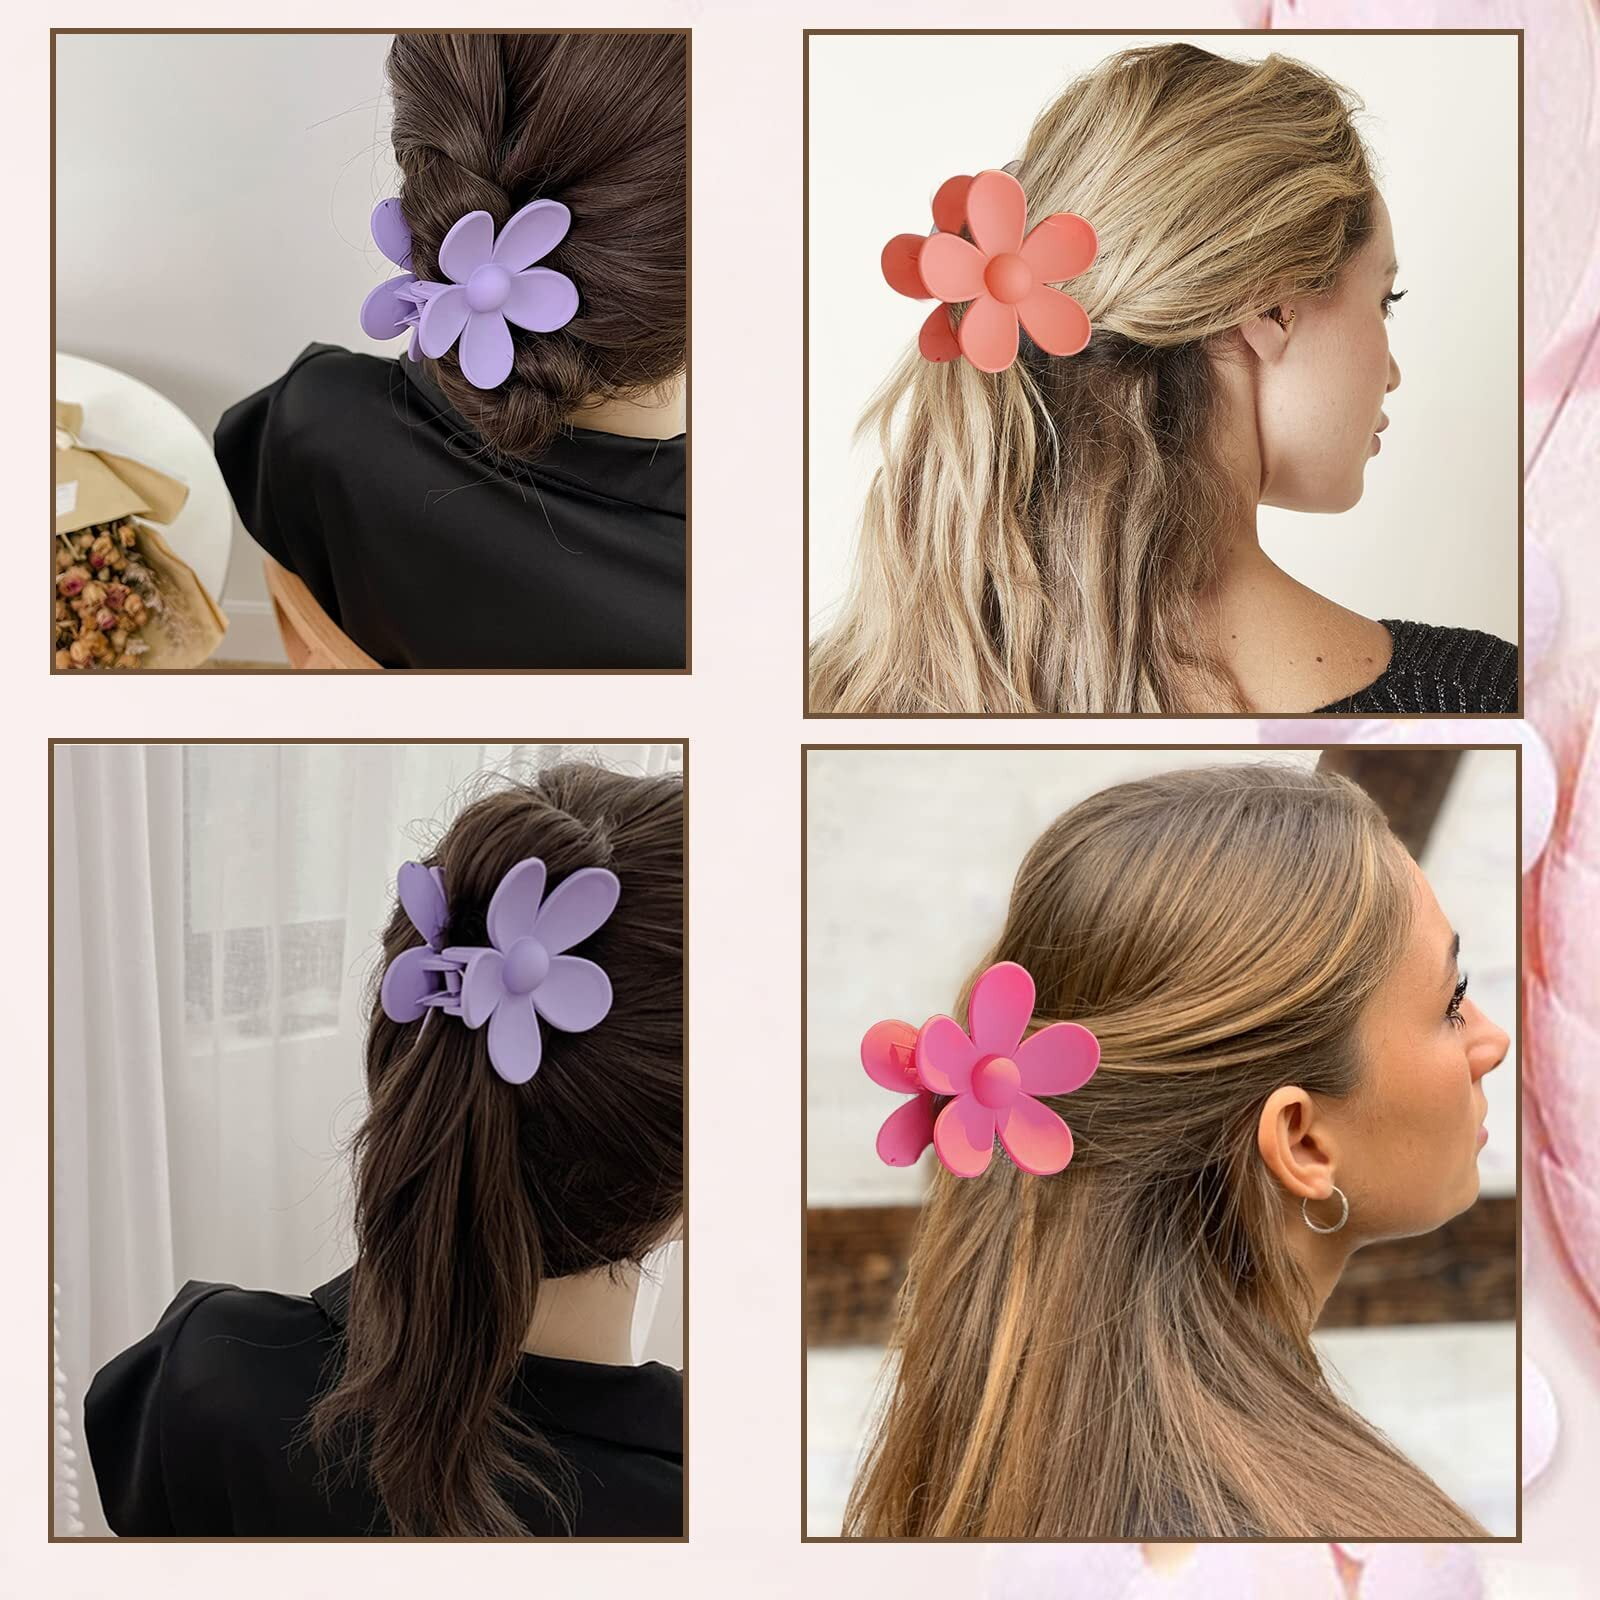 Flower Crown Braid Updo - Cute Girls Hairstyles